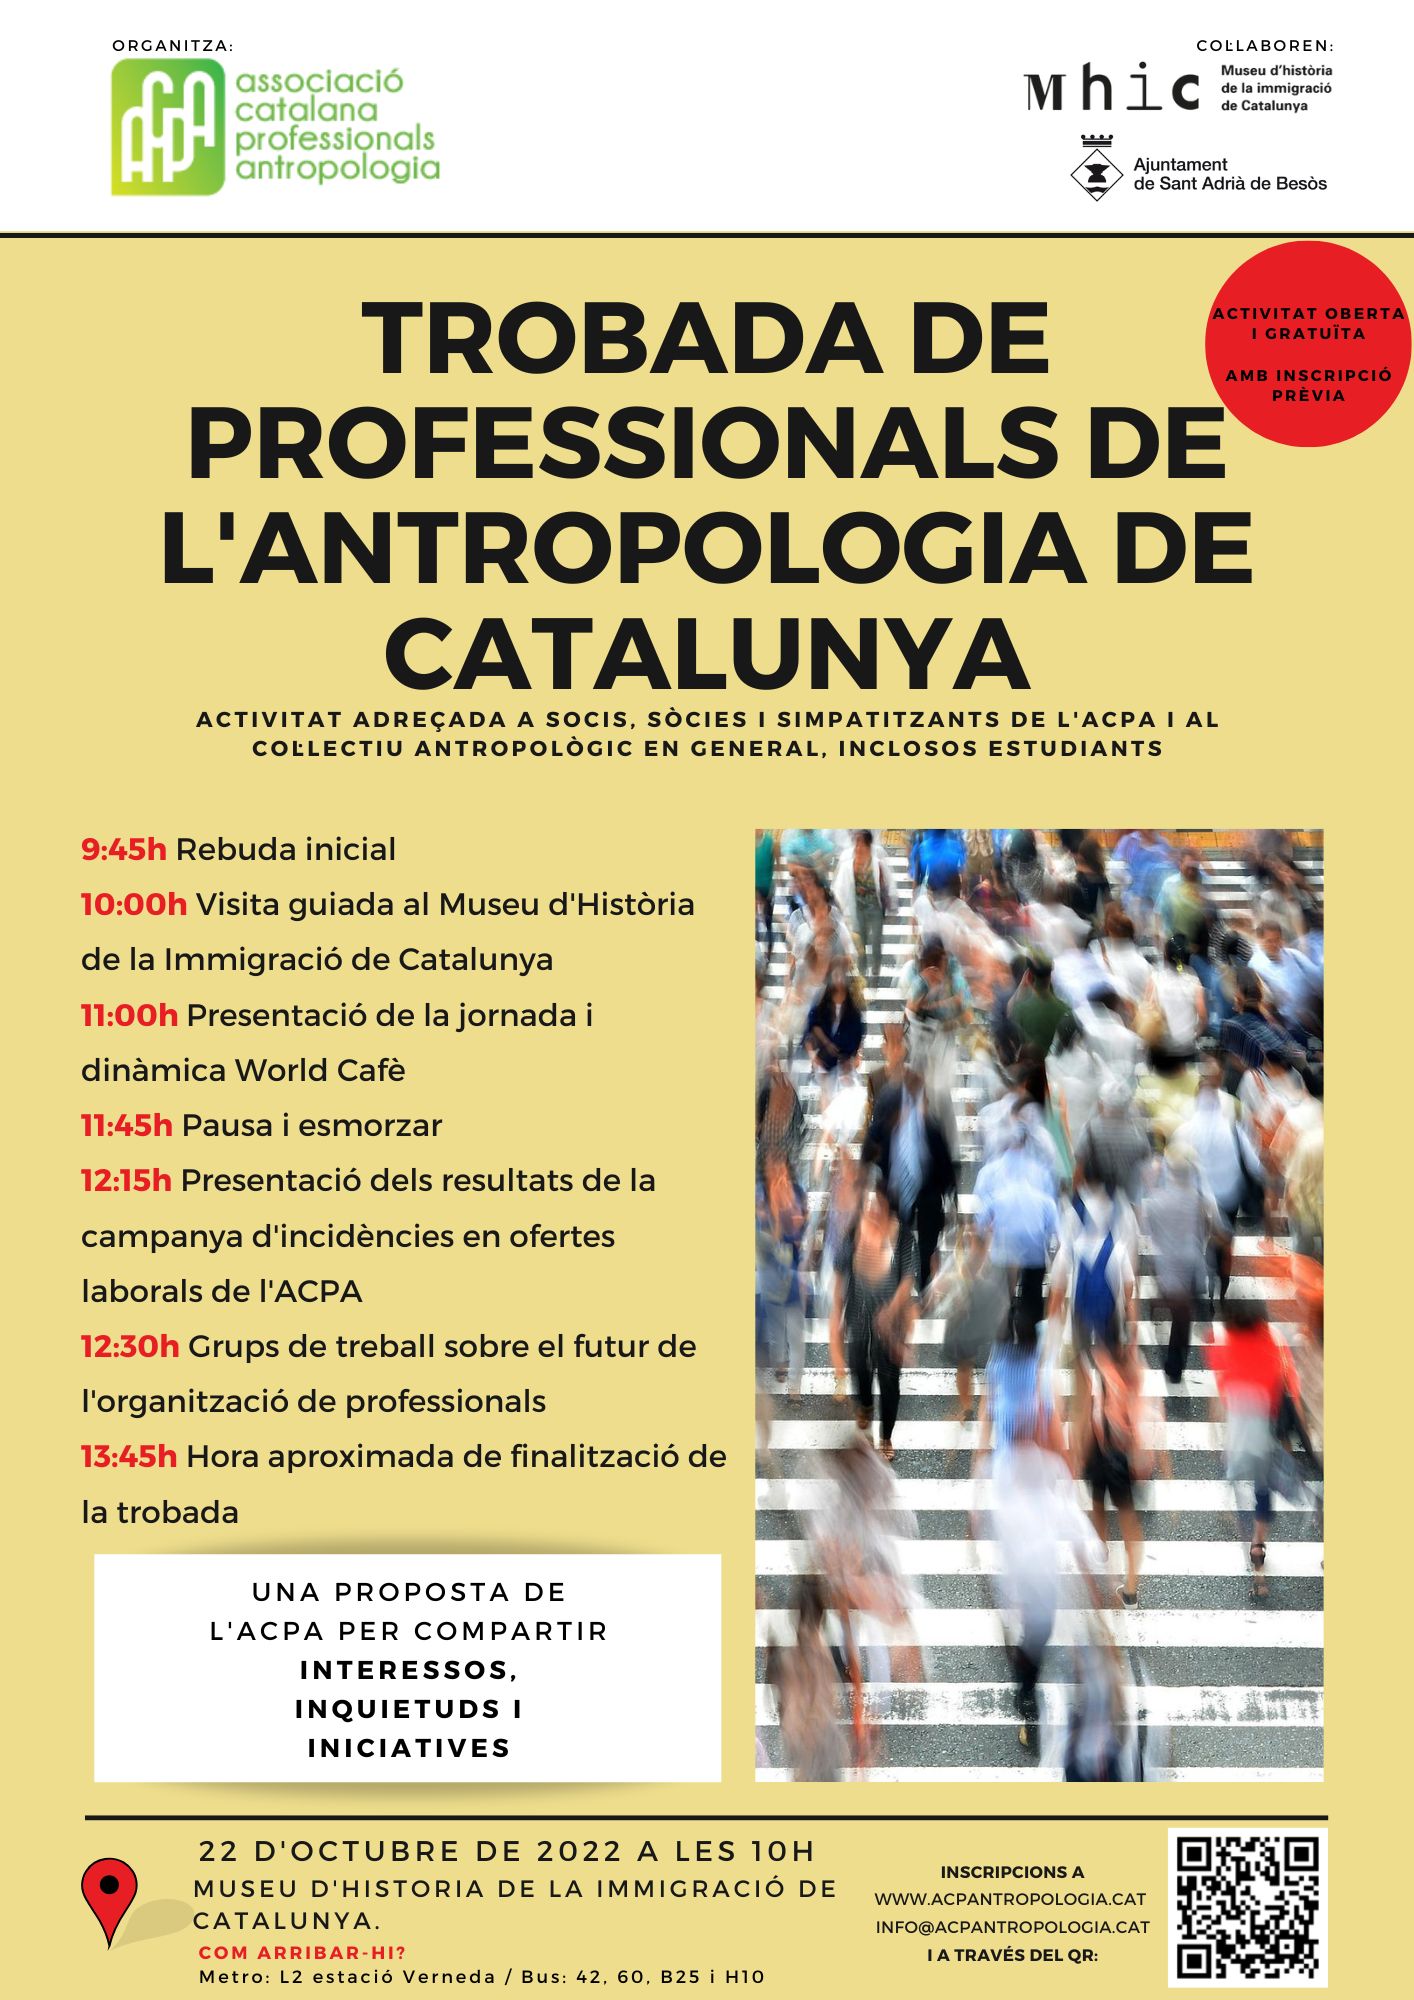 L’ACPA organitza una trobada de professionals de l’antropologia de Catalunya